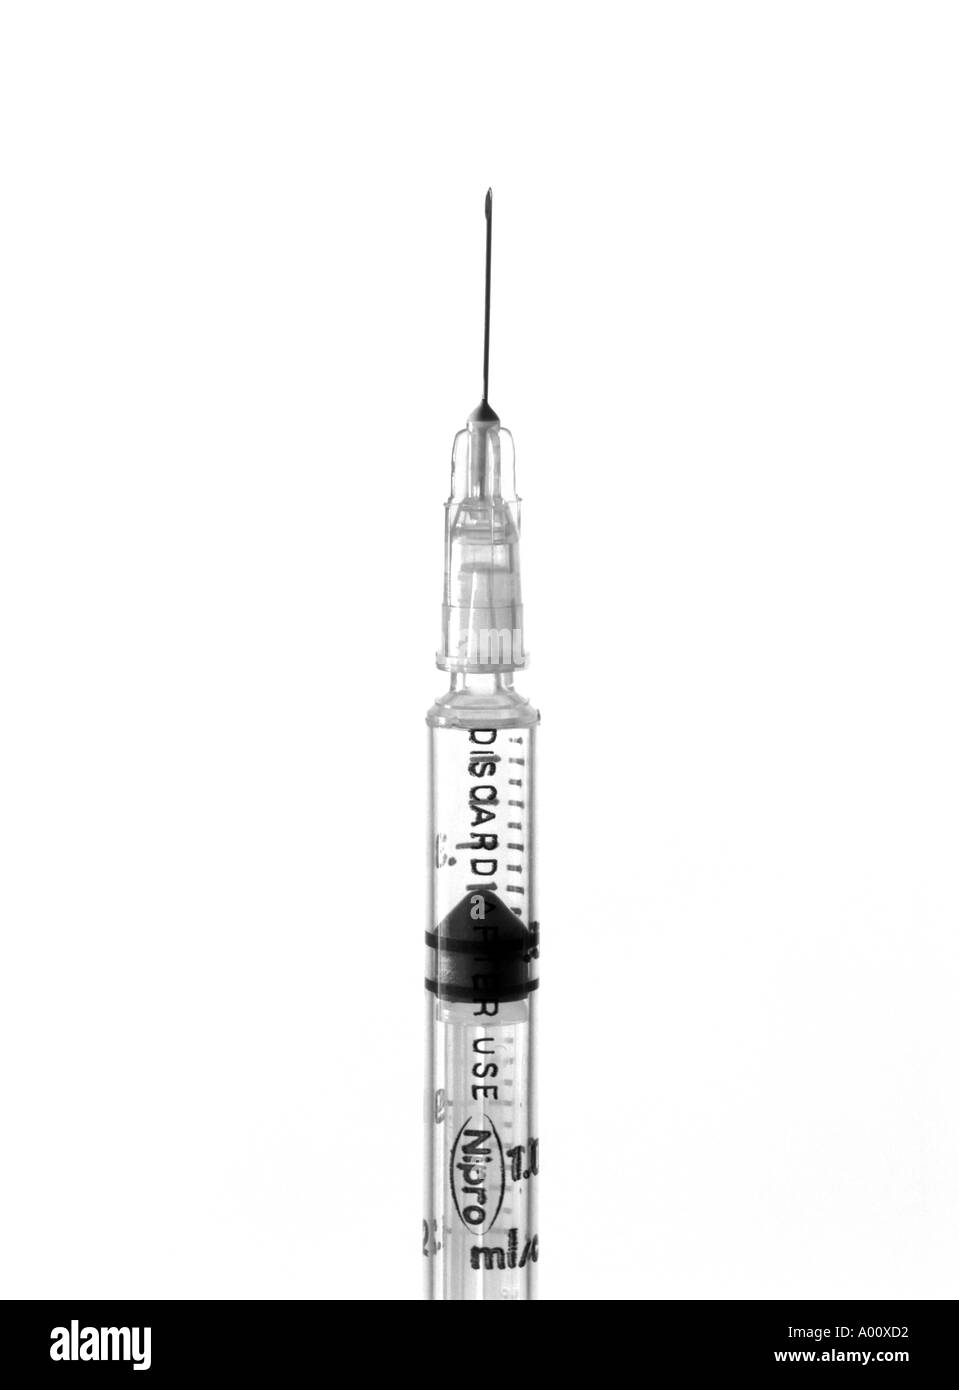 Image of sterile syringe  Stock Photo